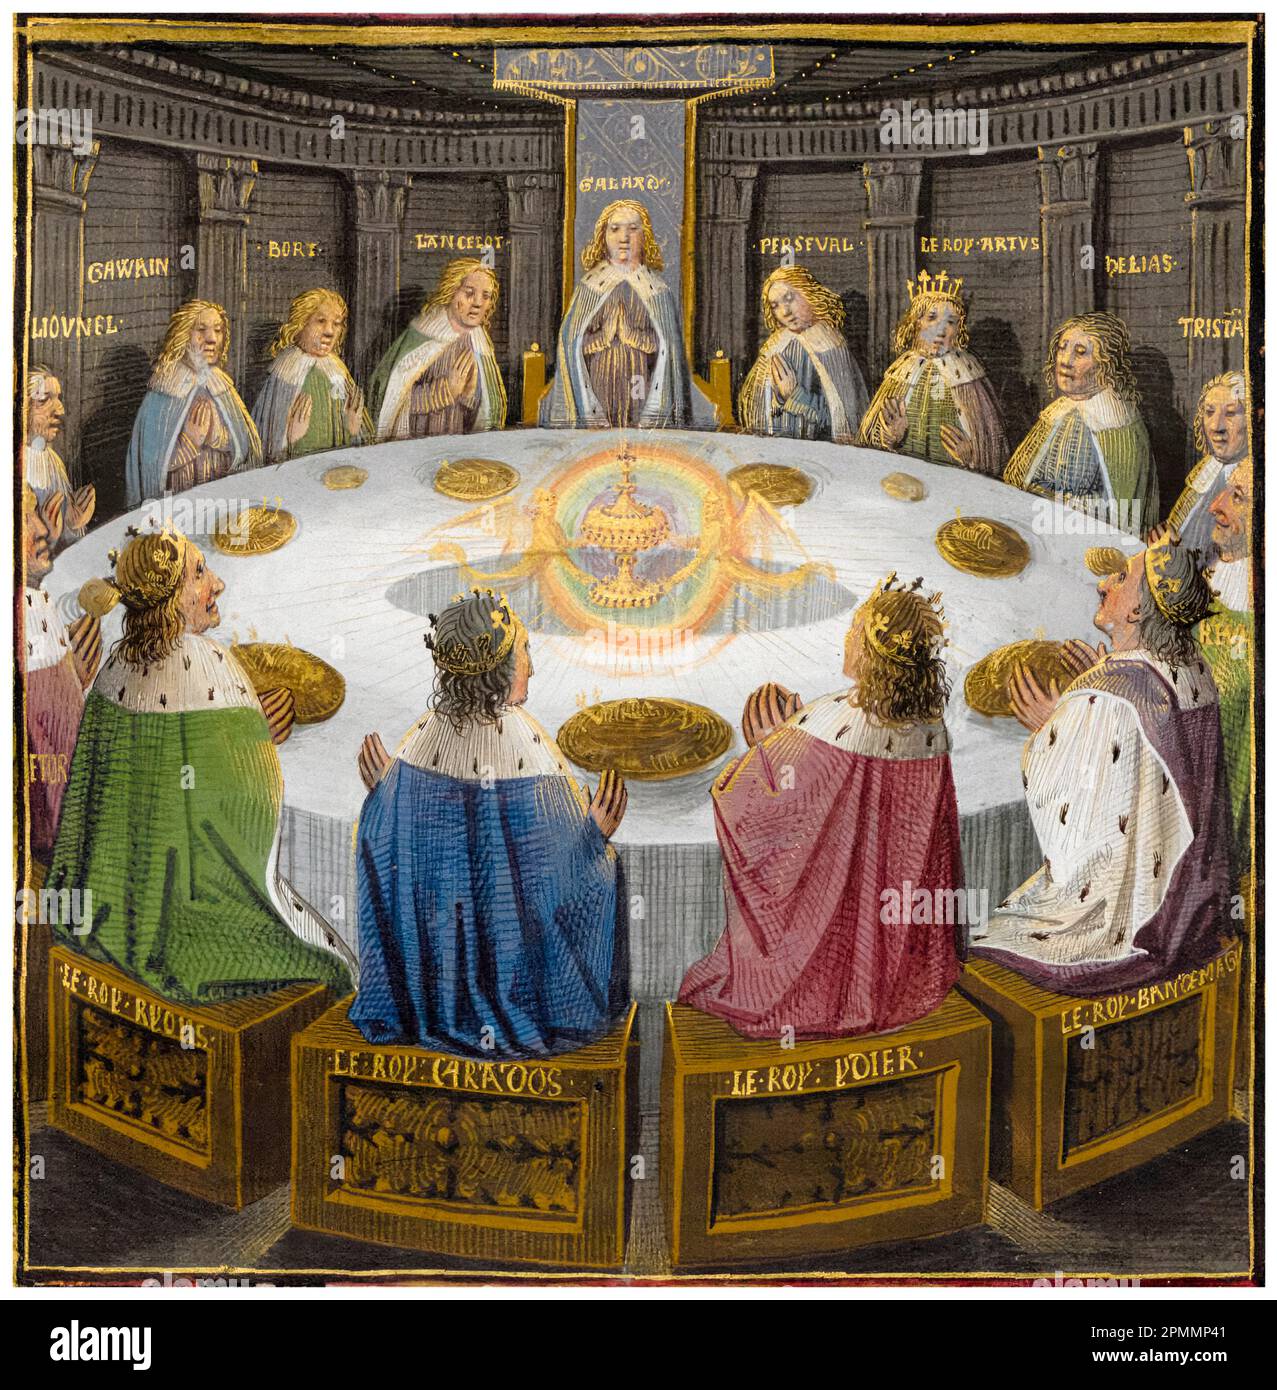 Der Heilige Gral erscheint König Artus und den Rittern der Tafelrunde, beleuchtetes Manuskript von Evrard d'Espinques, etwa 1475 Stockfoto